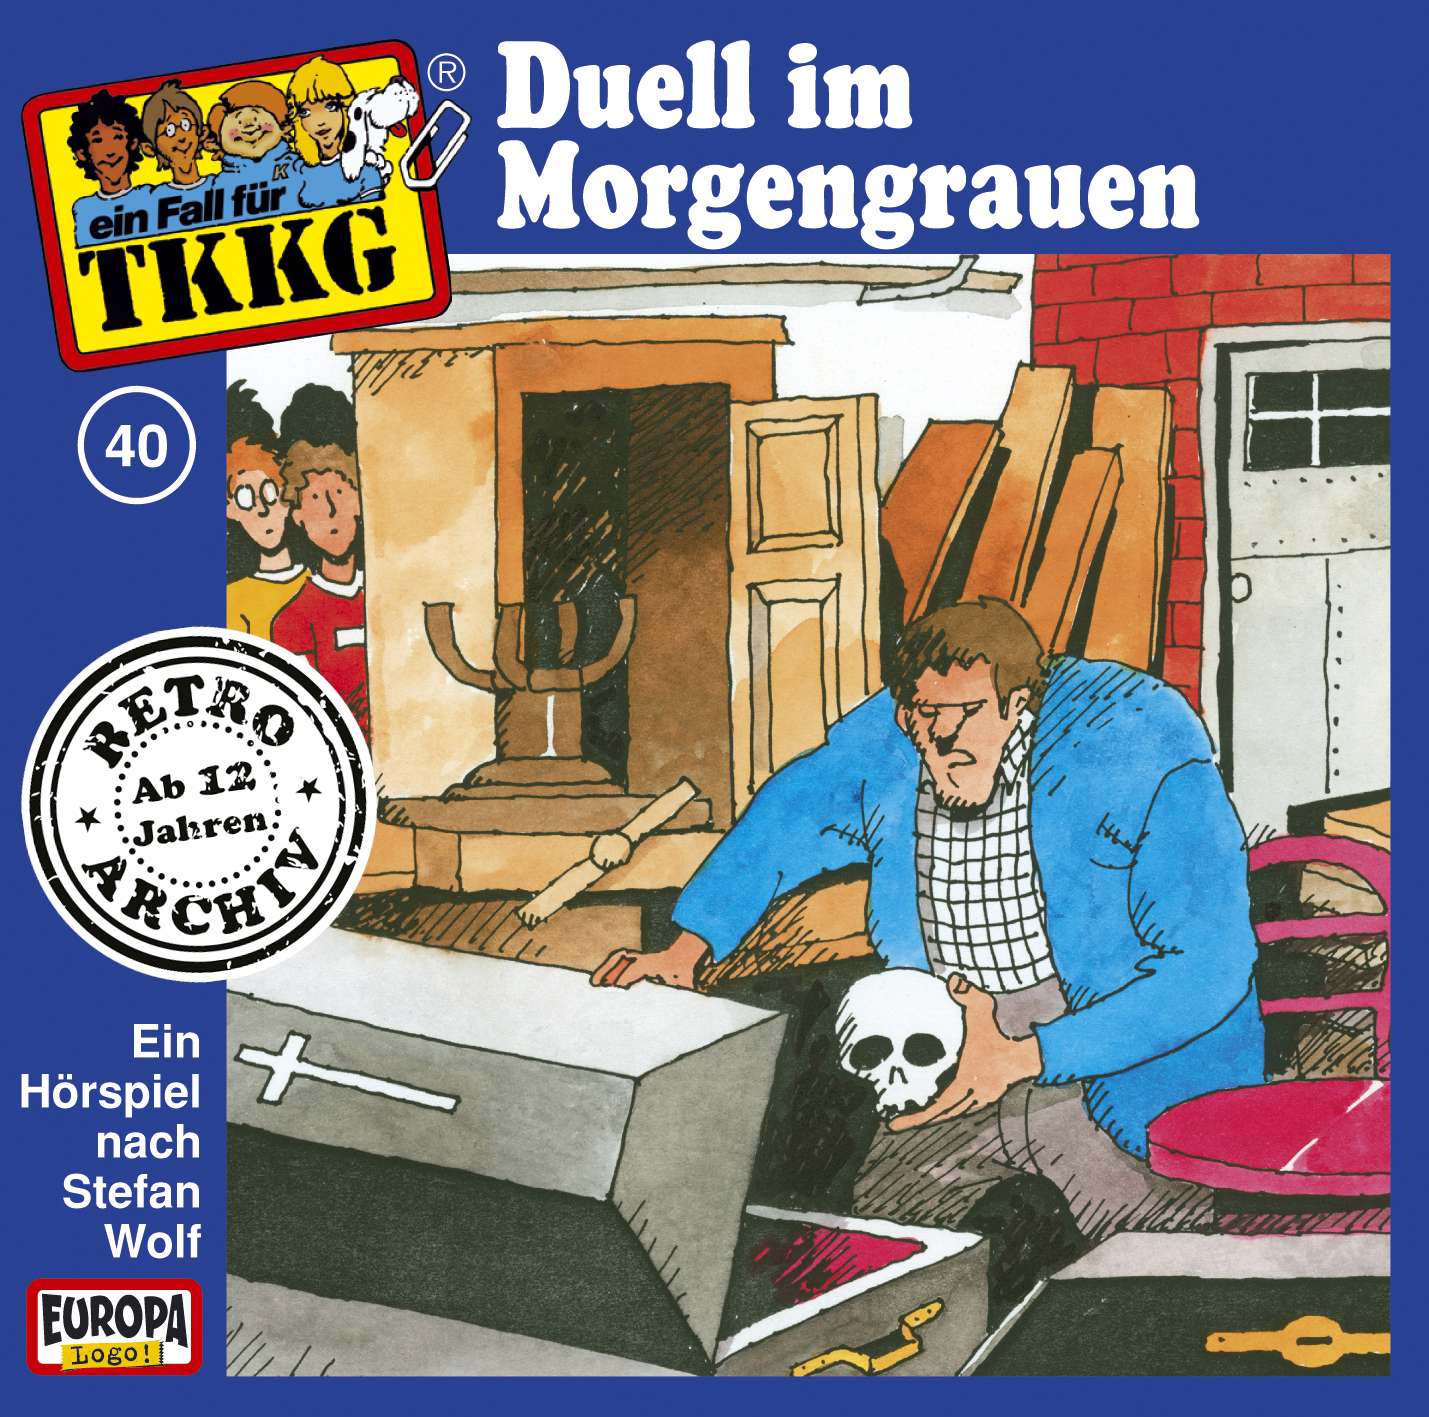 TKKG Retro-Archiv: Duell im Morgengrauen